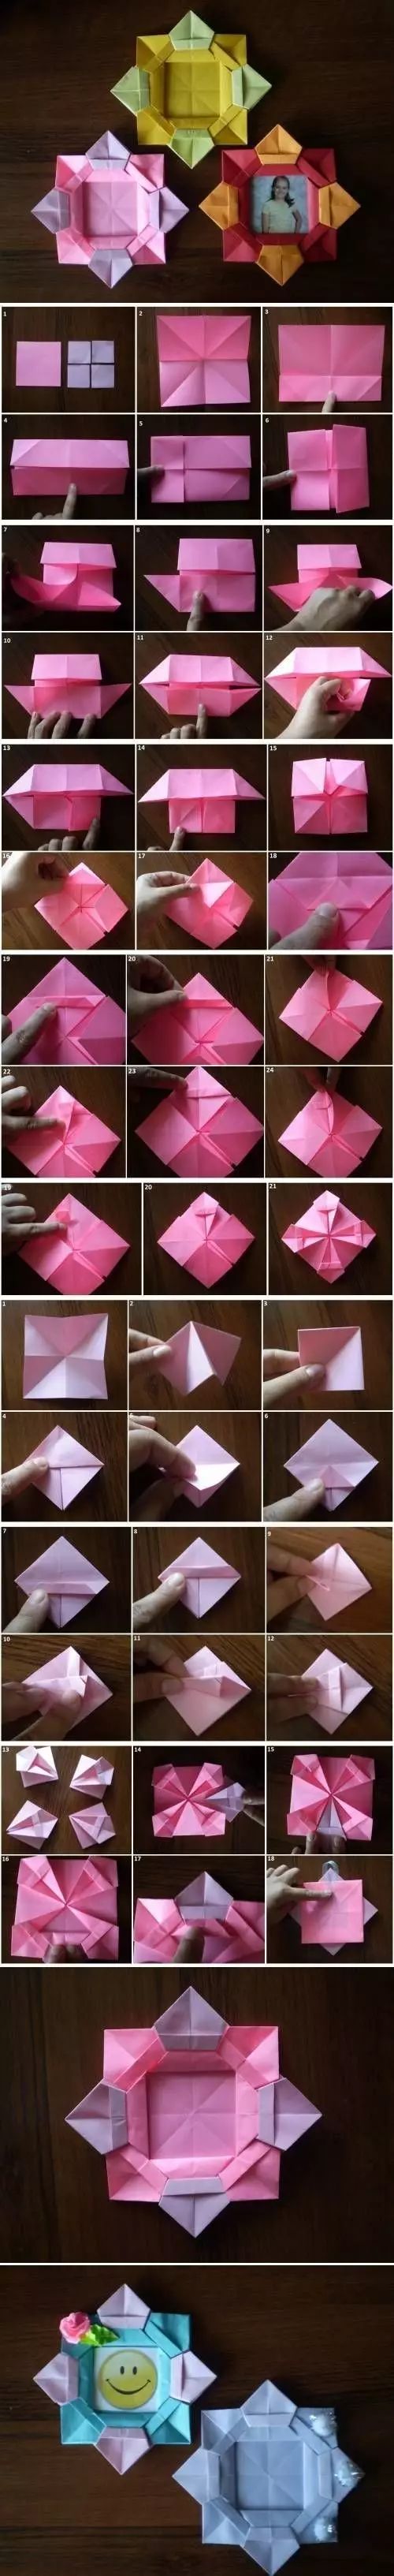 大人孩子都能一起玩的折紙，幾張彩紙就夠玩一天啦！